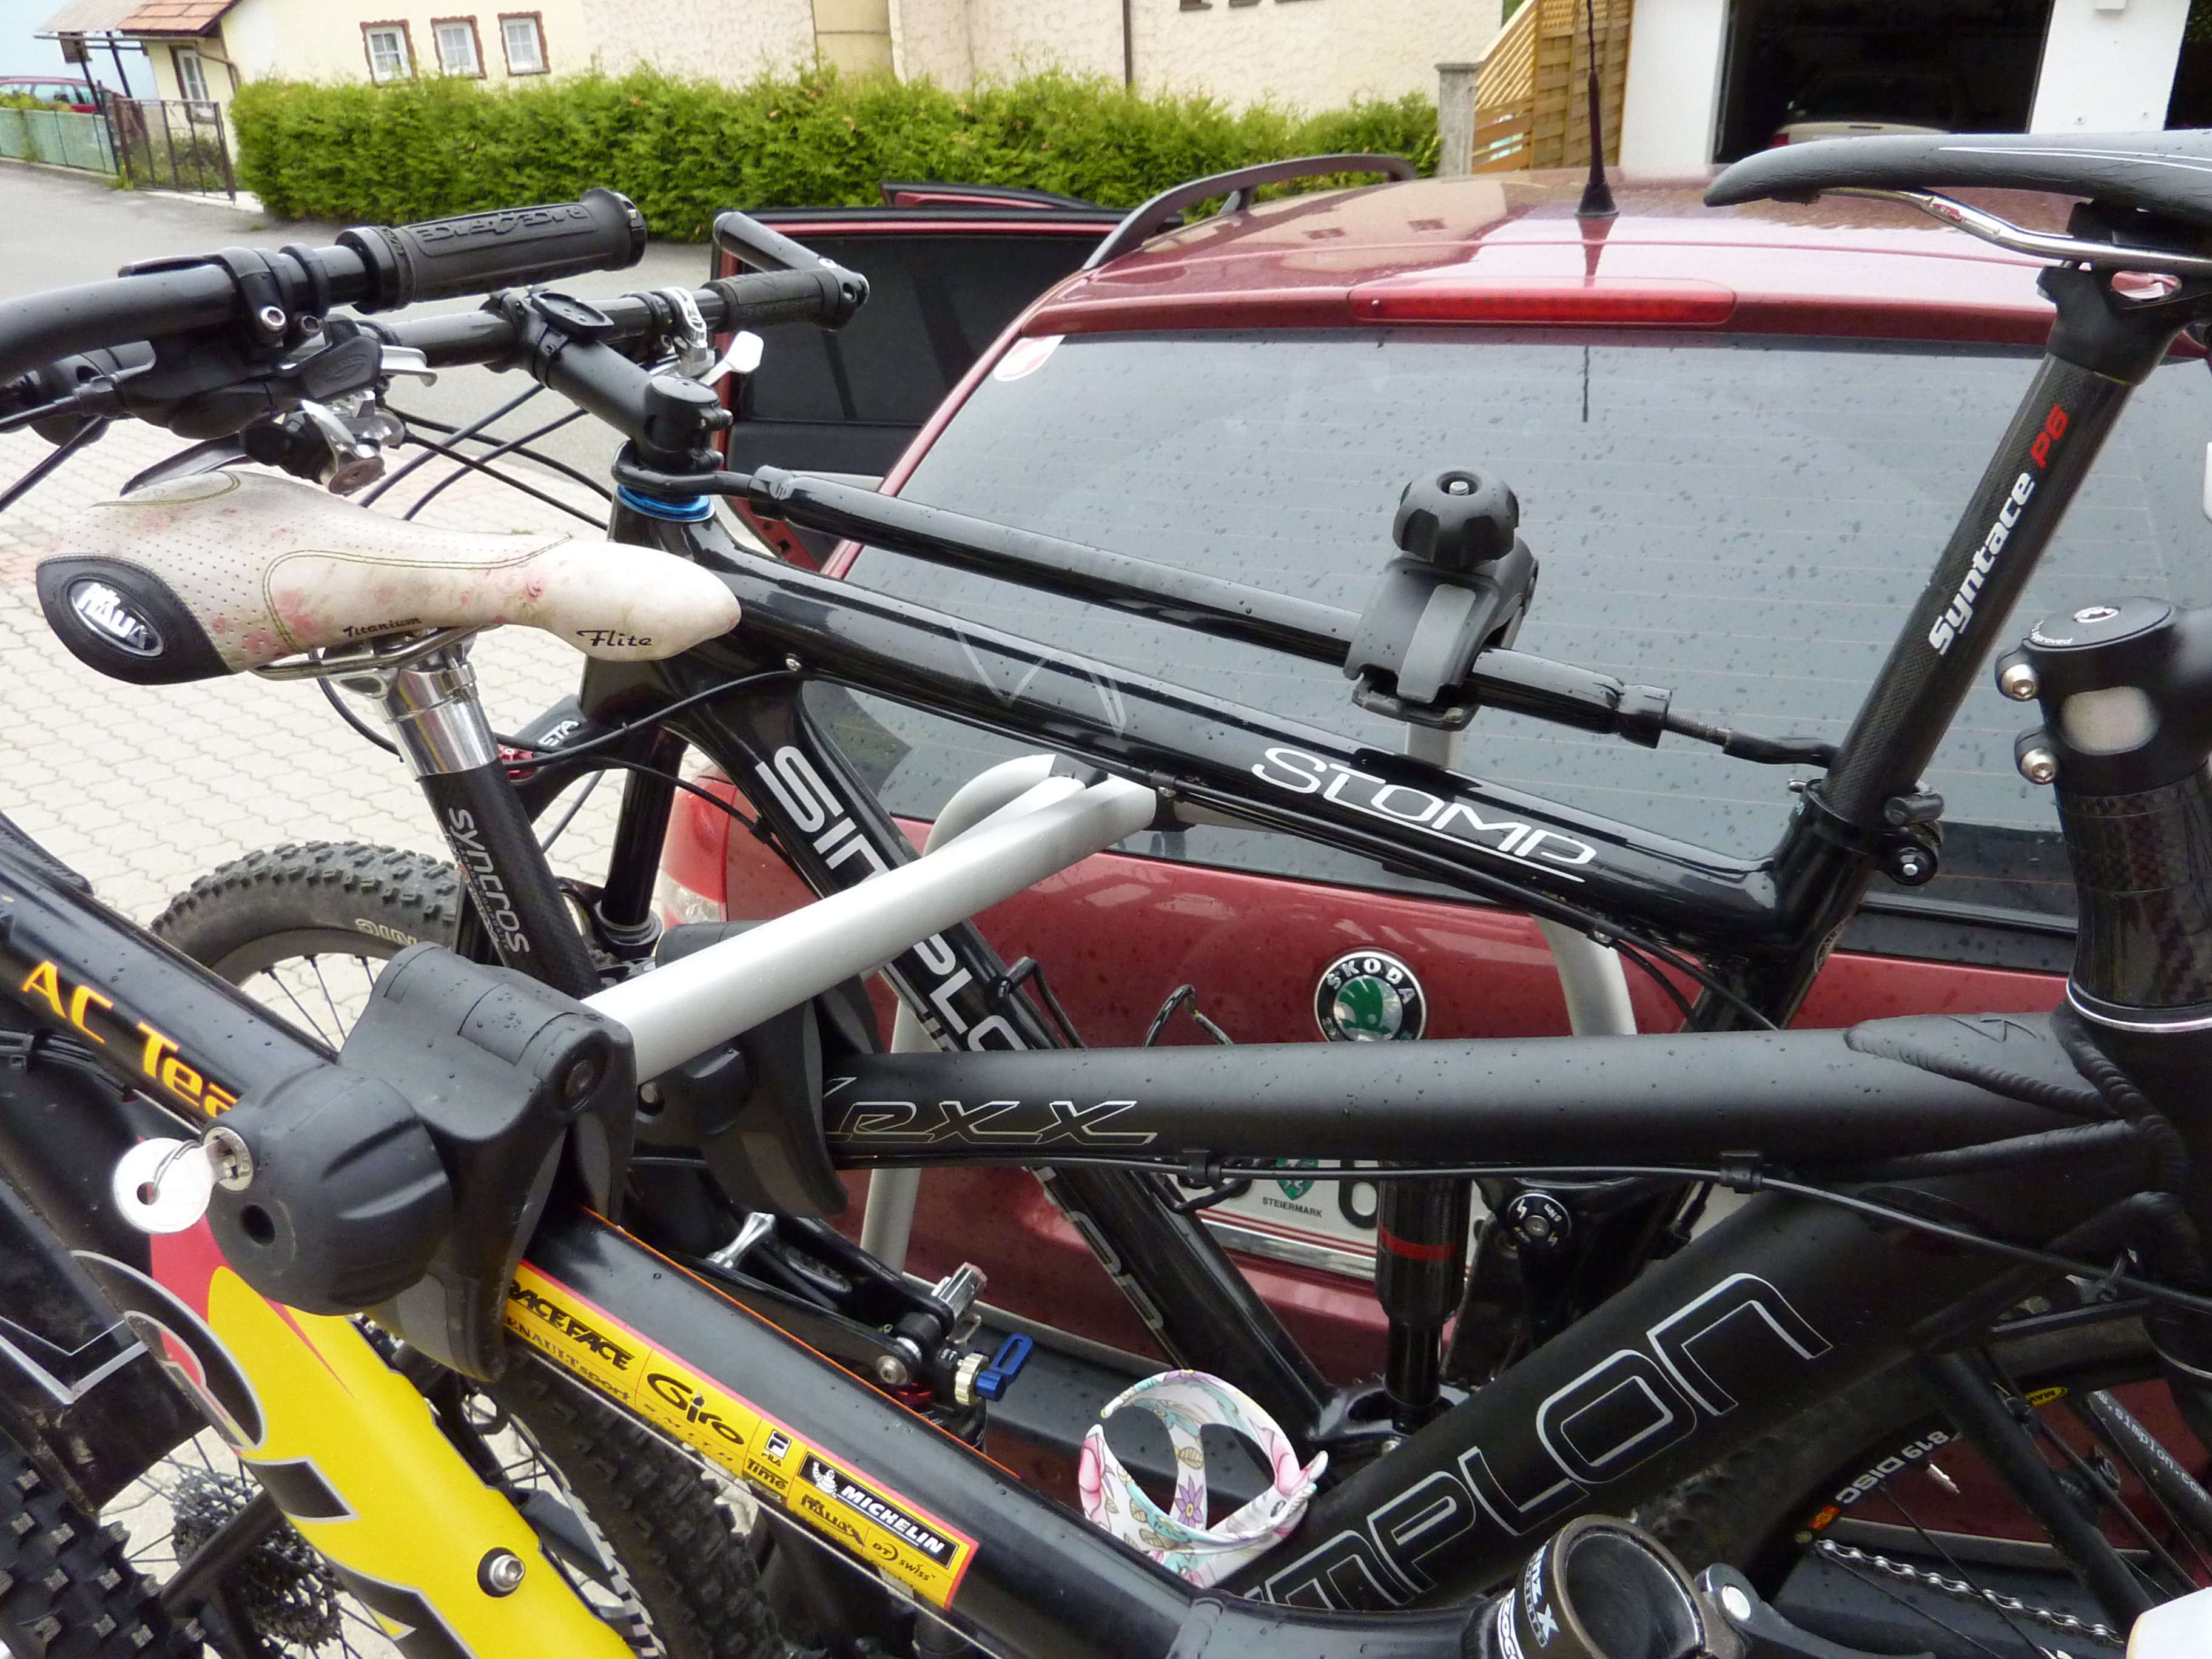 Fahrradträger: Klemmung von Carbonrahmen - Ideen? - Sonstige